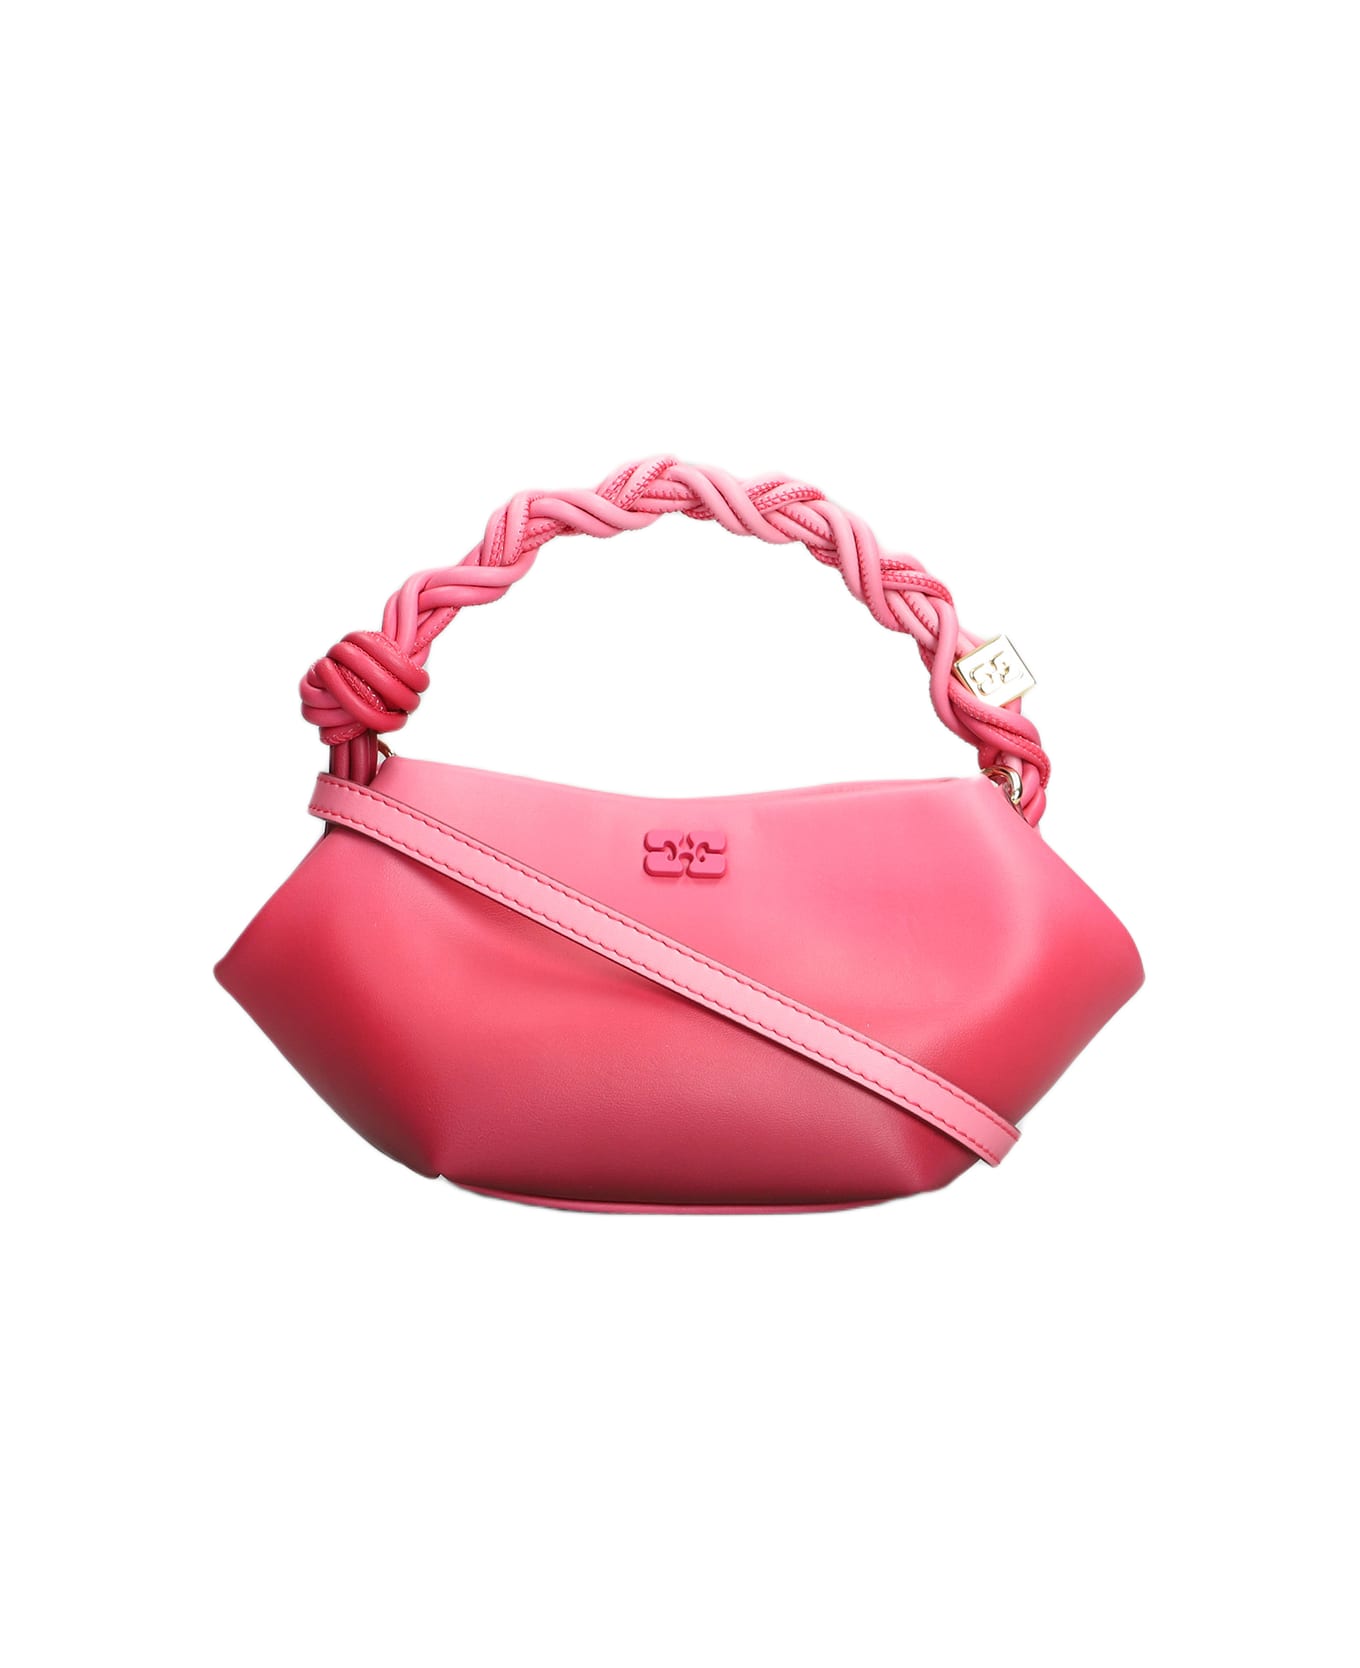 Ganni Bou Hand Bag In Rose-pink Leather - rose-pink